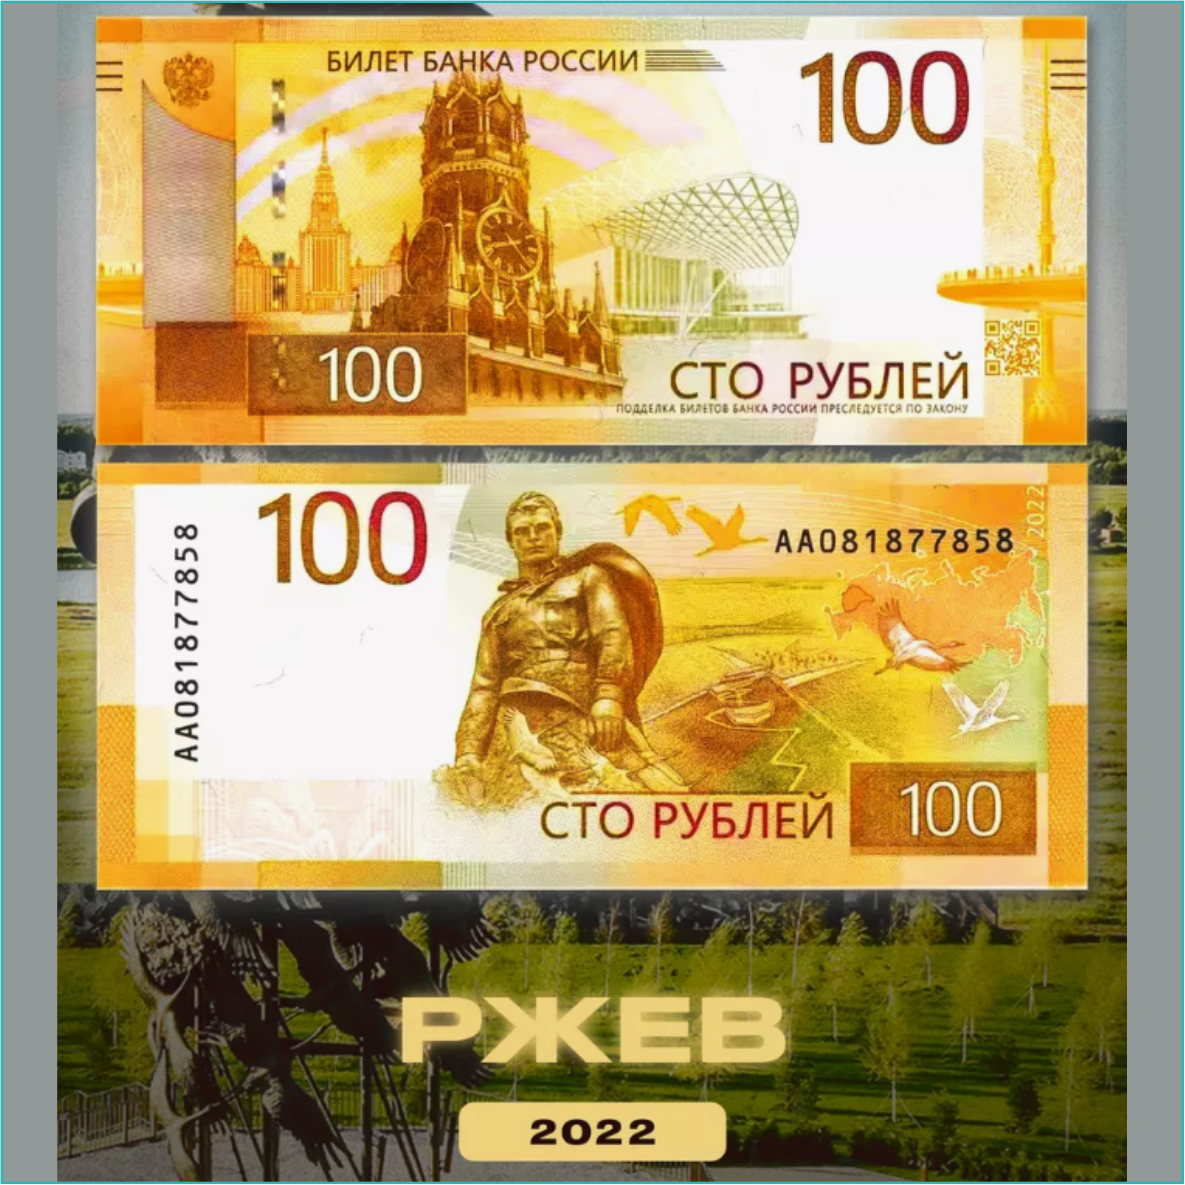 Банкнота "Ржев" 100 рублей (Россия) 2022